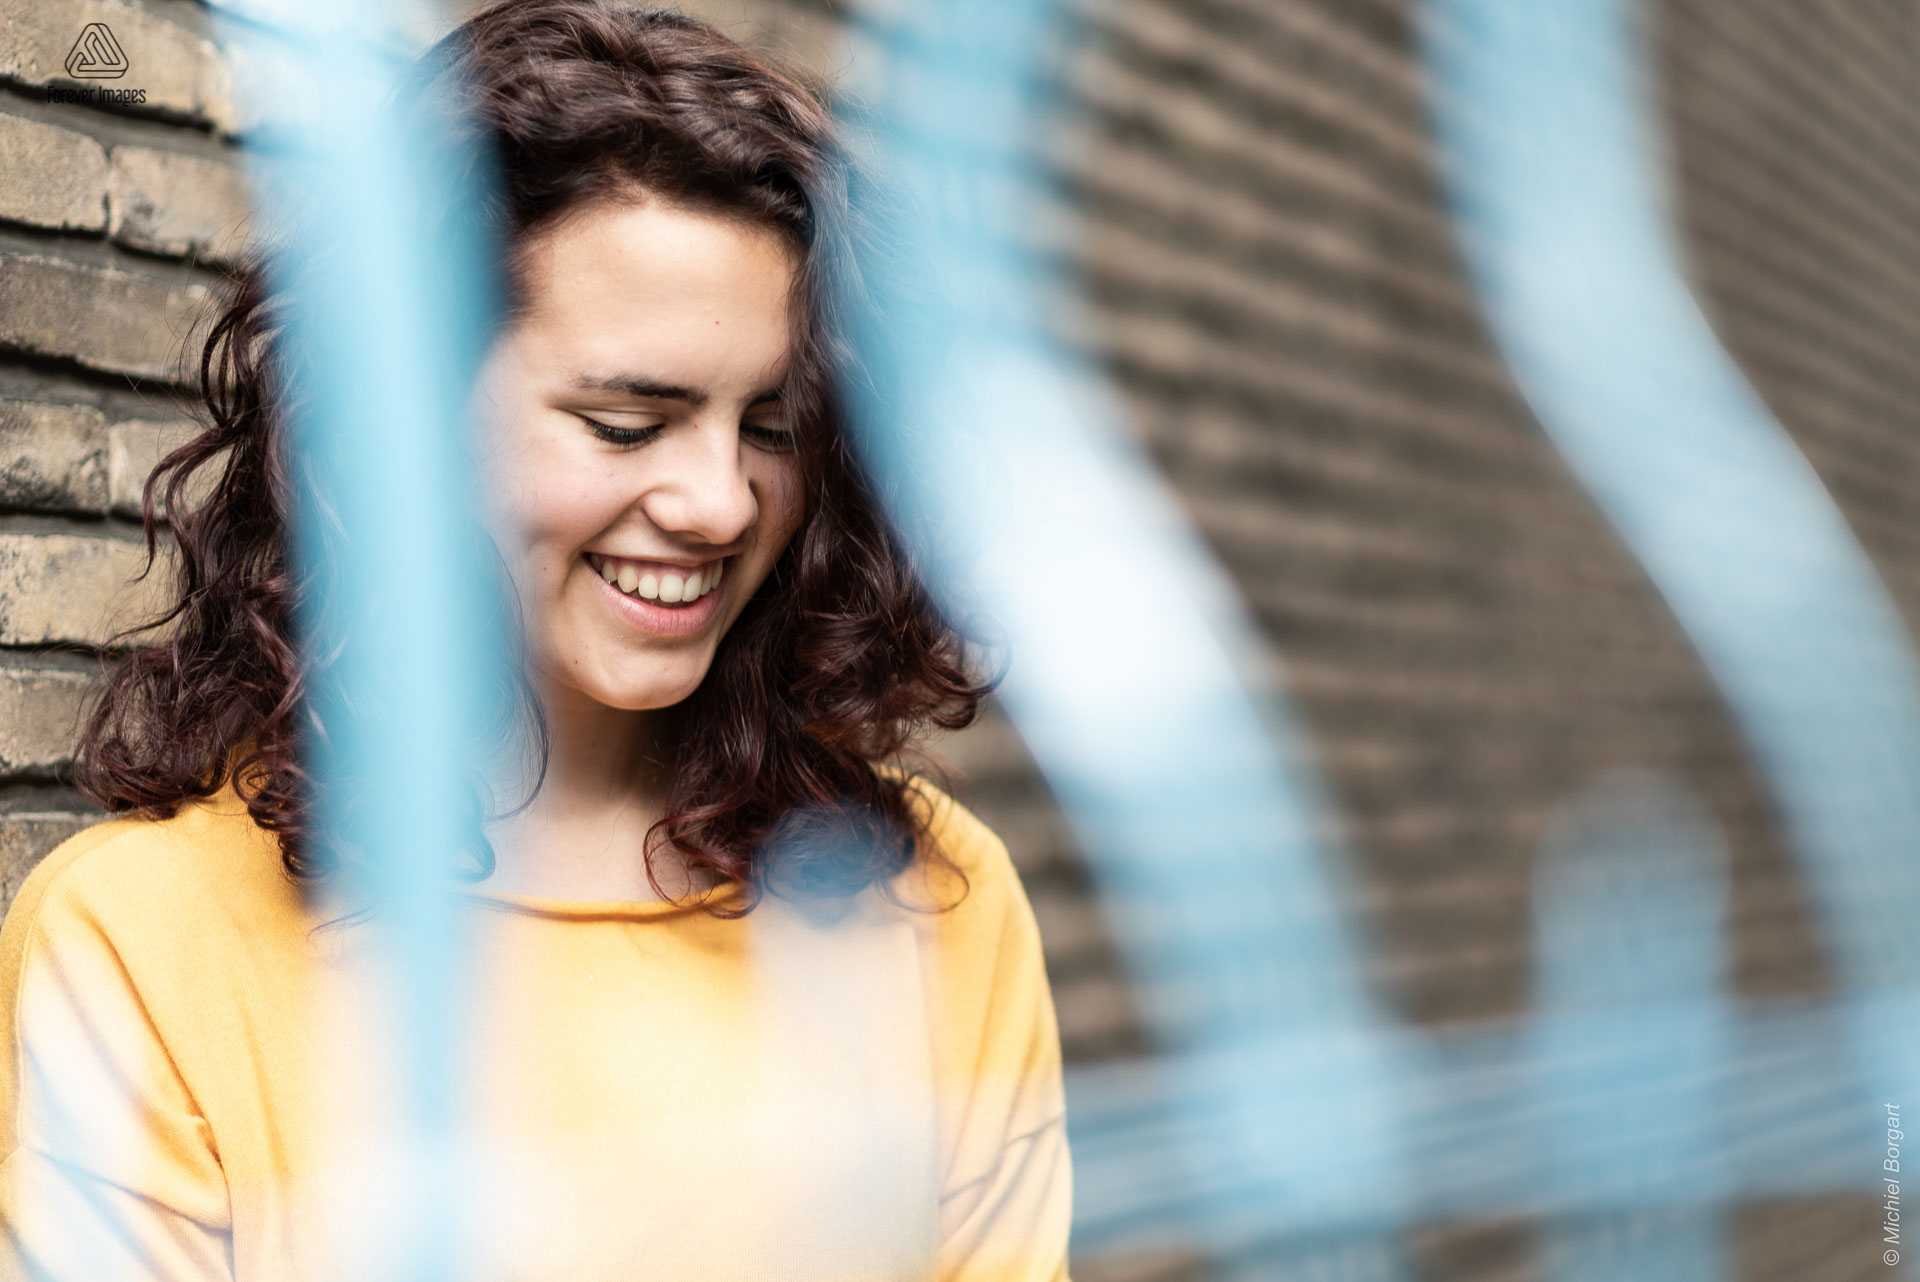 Portretfoto jonge dame tegen muur achter blauw hek lachend kijkend naar beneden | Tessa Holscher | Portretfotograaf Michiel Borgart - Forever Images.